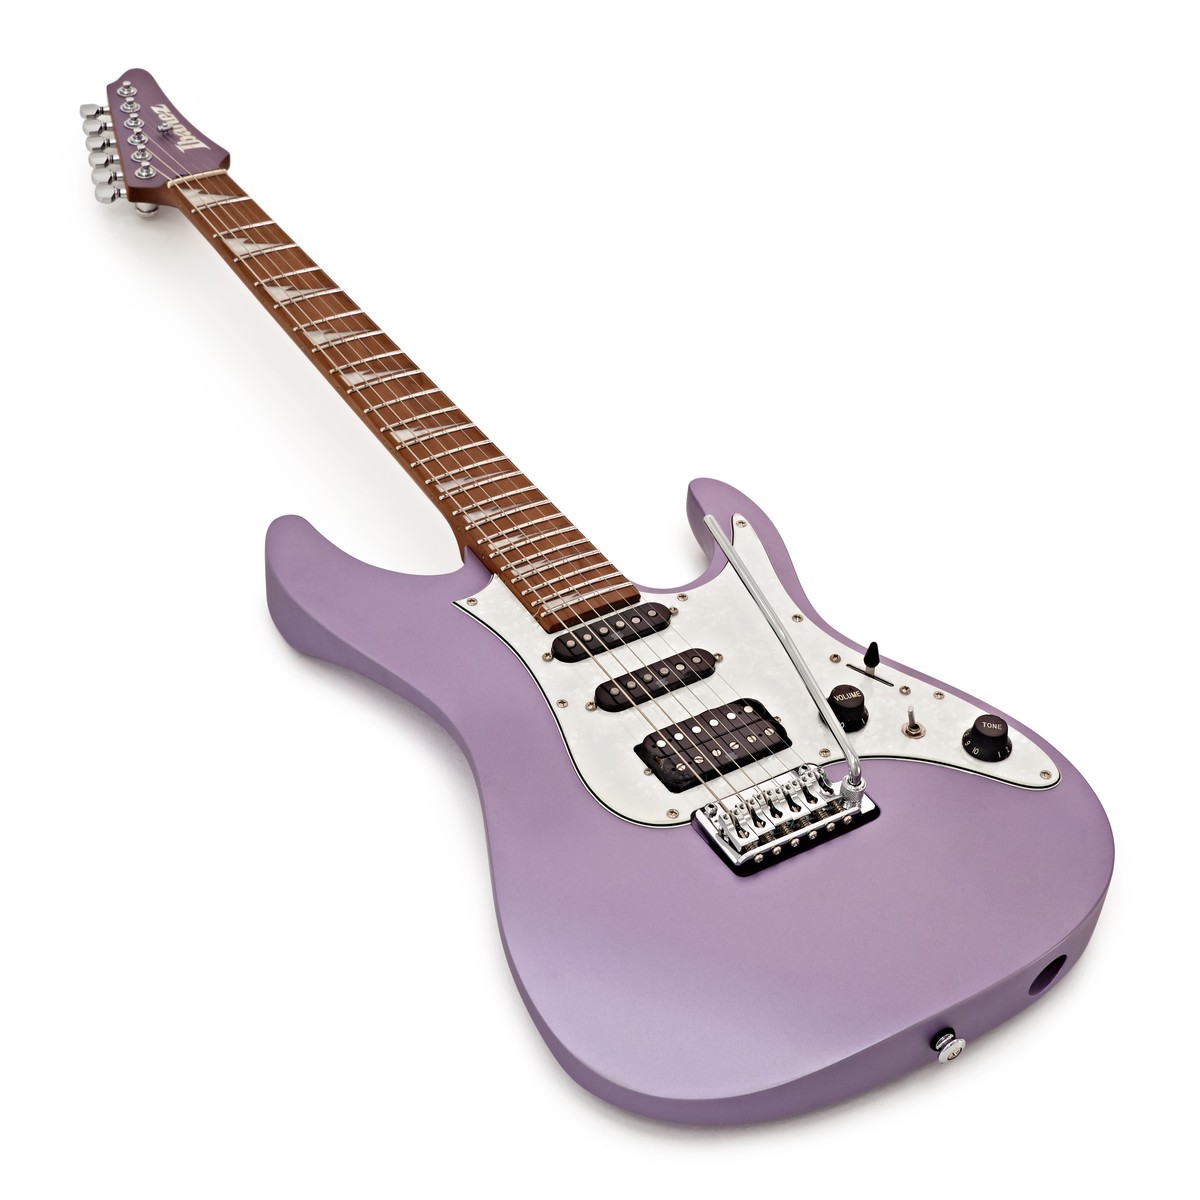 Ibanez Mario Camarena Mar10 Lmm Premium Signature Hss Trem Mn +housse - Lavender Metallic Matte - Elektrische gitaar in Str-vorm - Variation 2